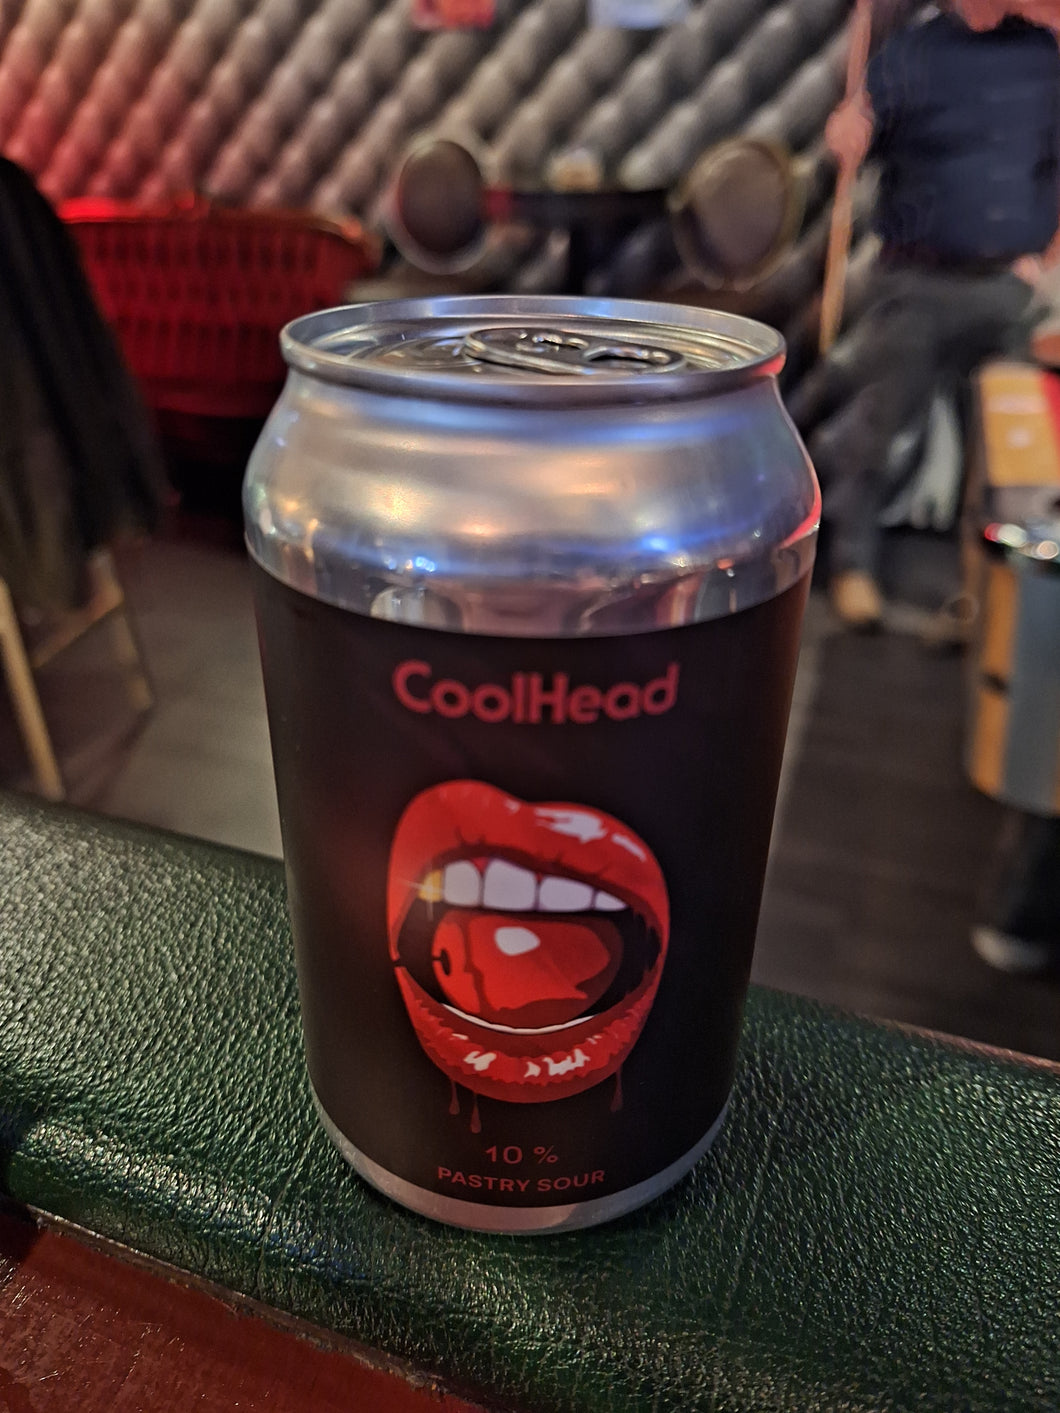 CoolHead Brew Cherry Liquorice Chew Bites